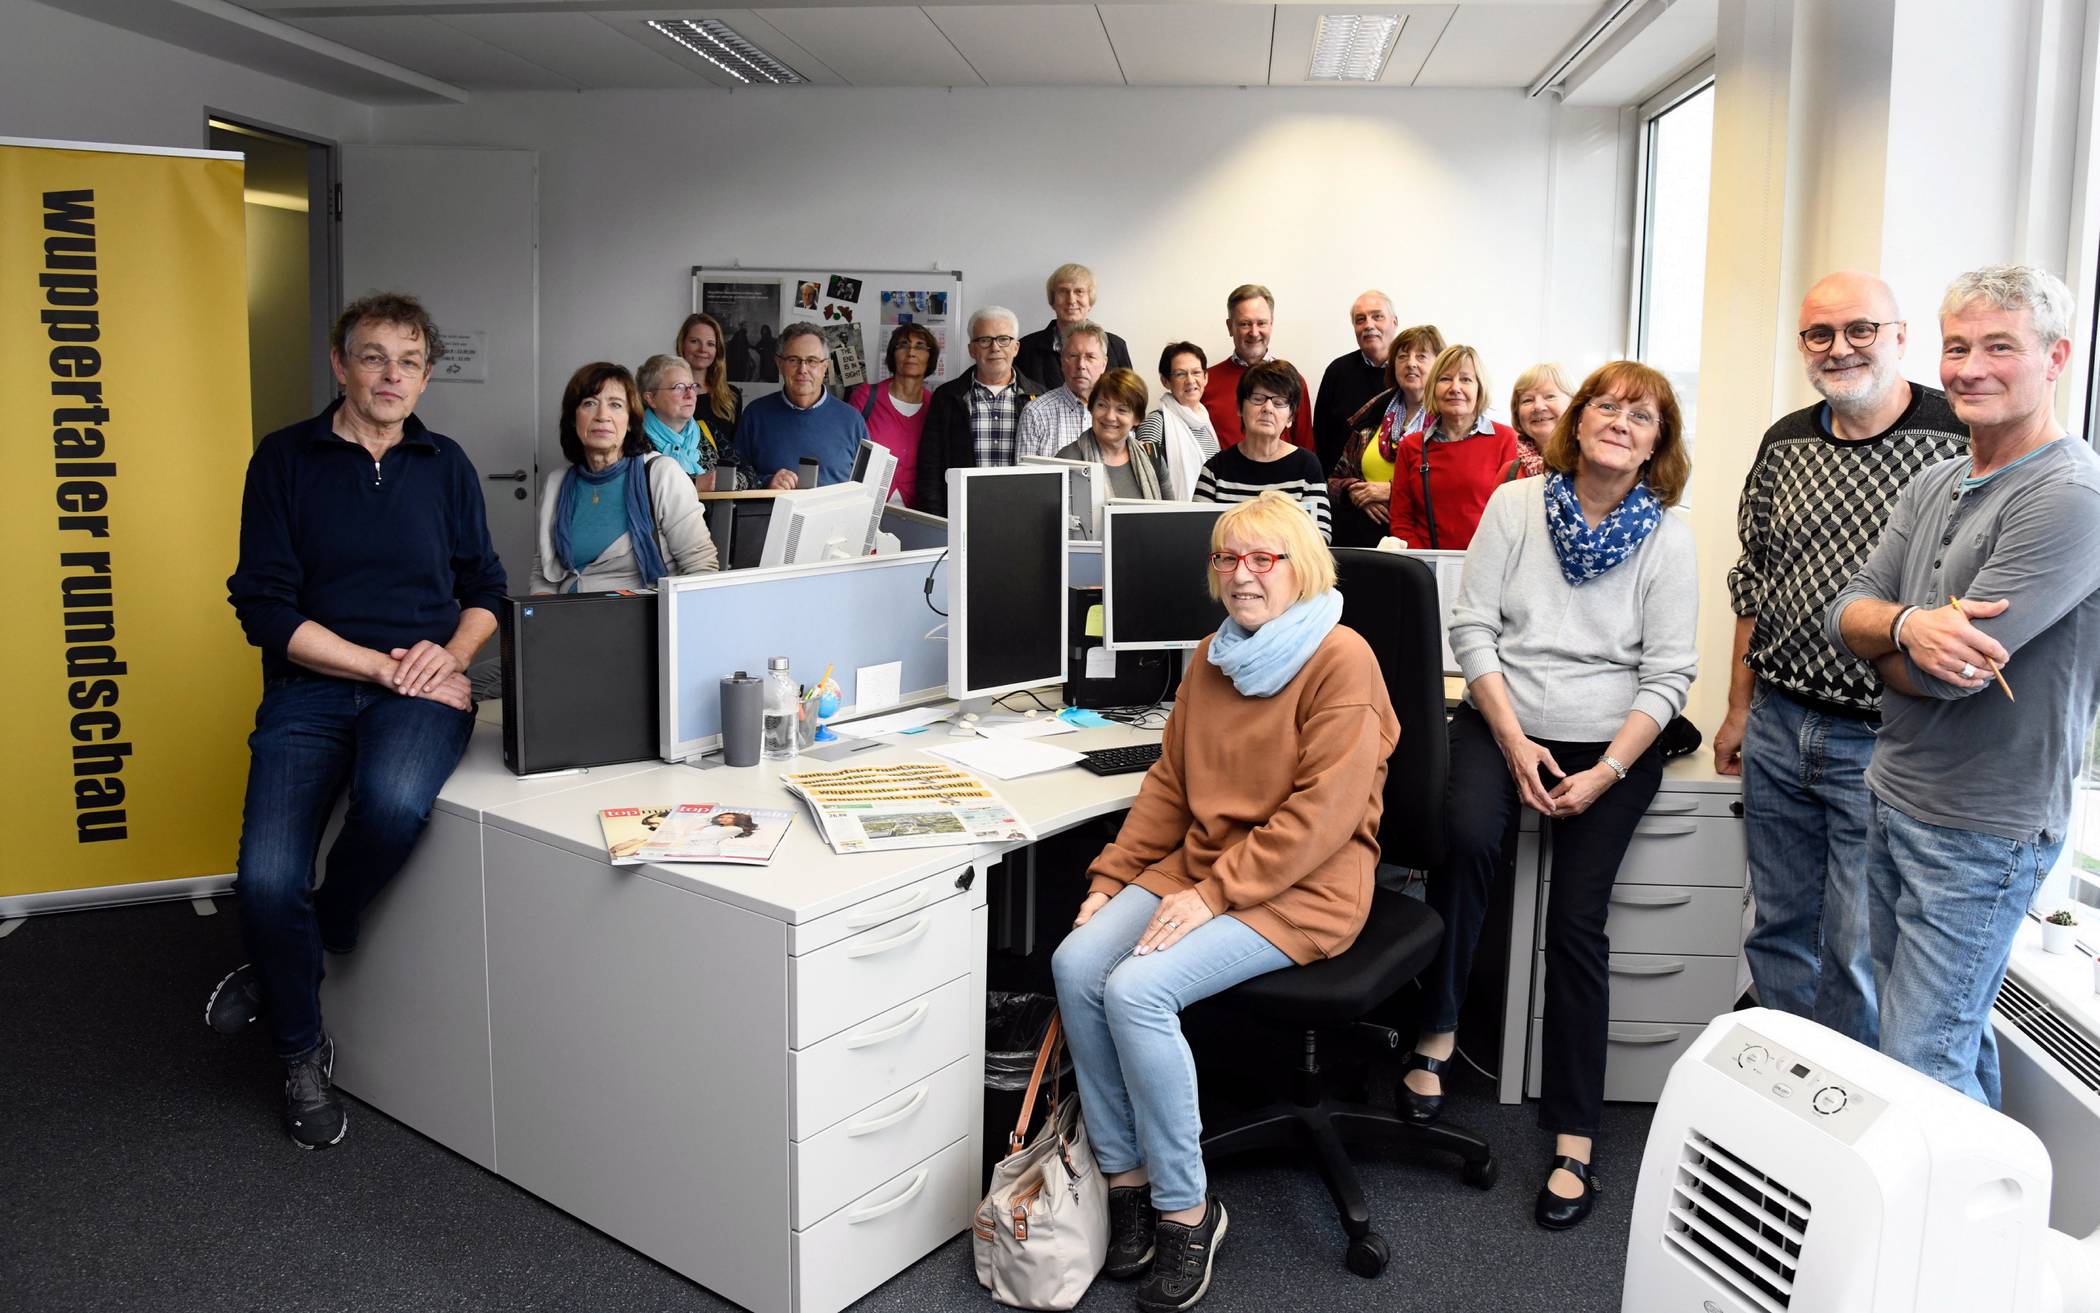  Besuch einer „Arbeit und Leben“-Gruppe im Oktober 2019 in der Rundschau-Redaktion. 